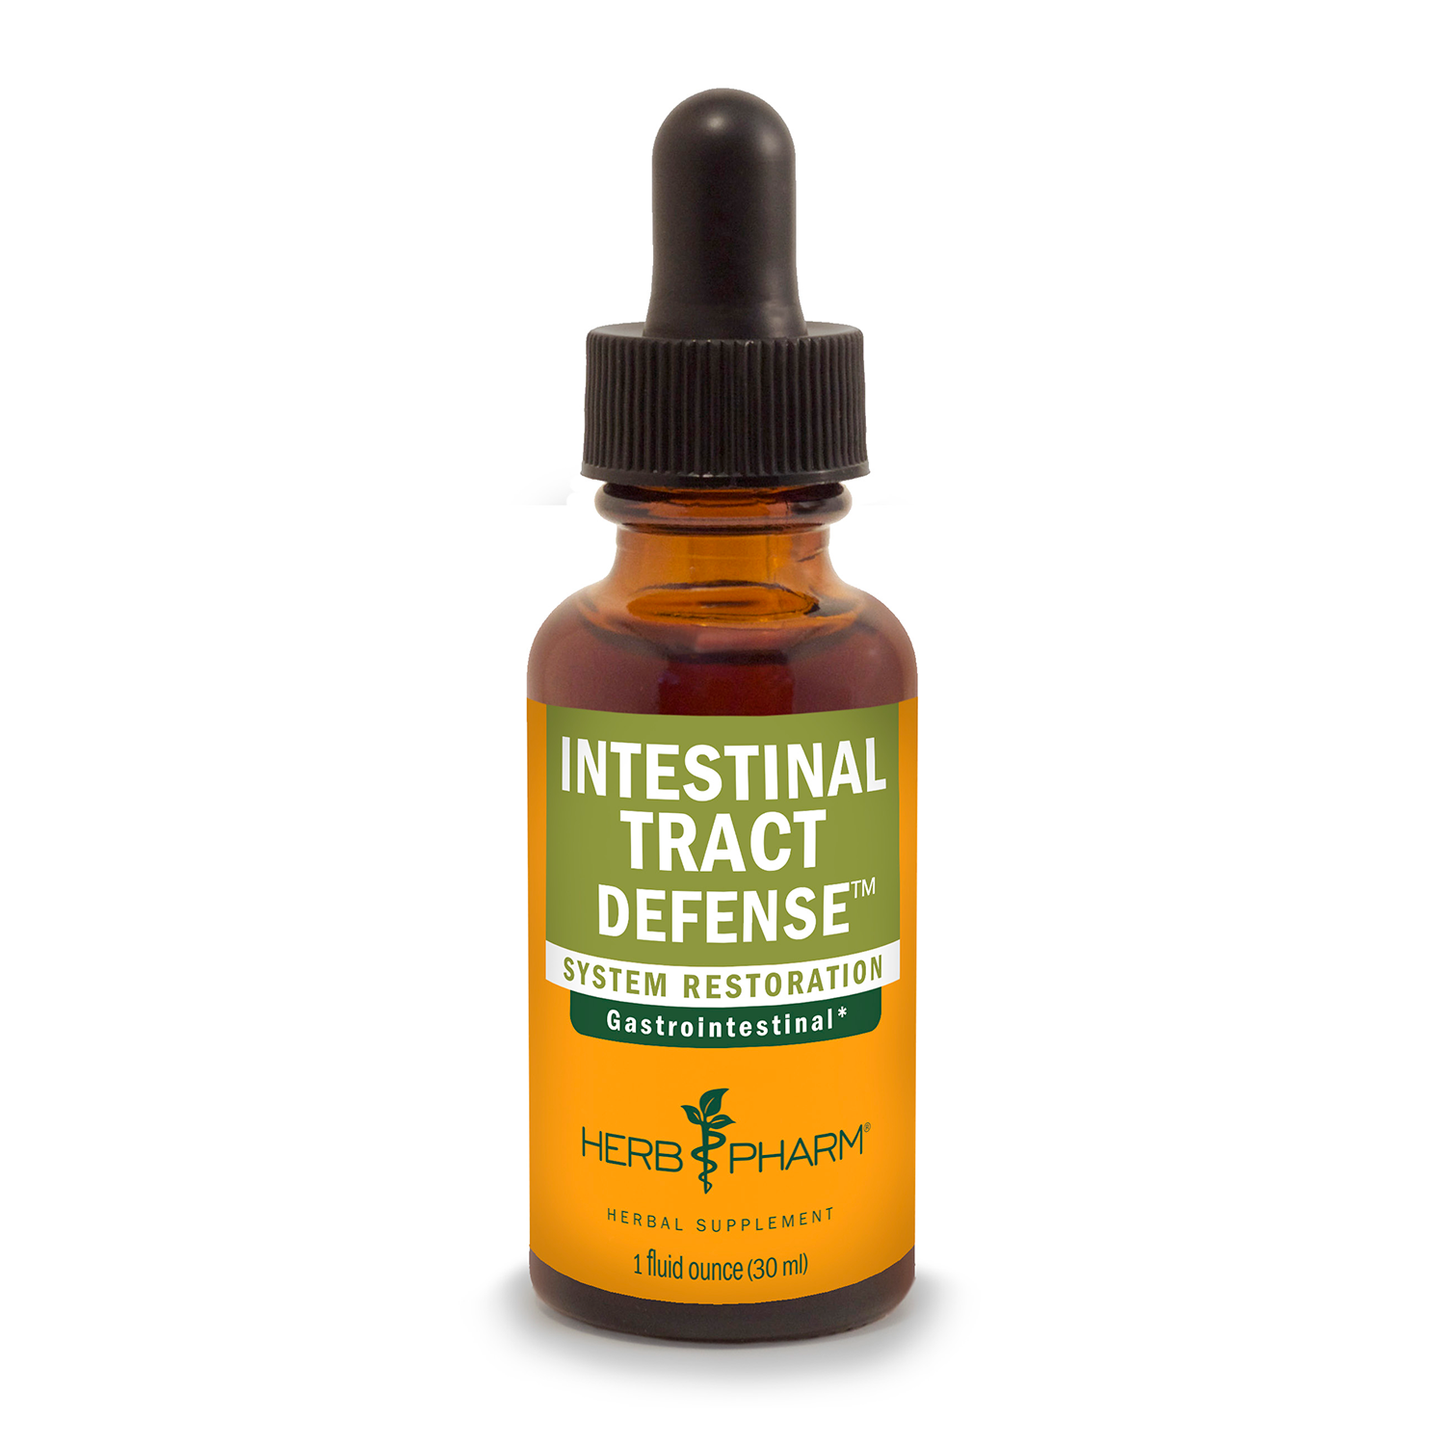 Intestinal Tract Defense™